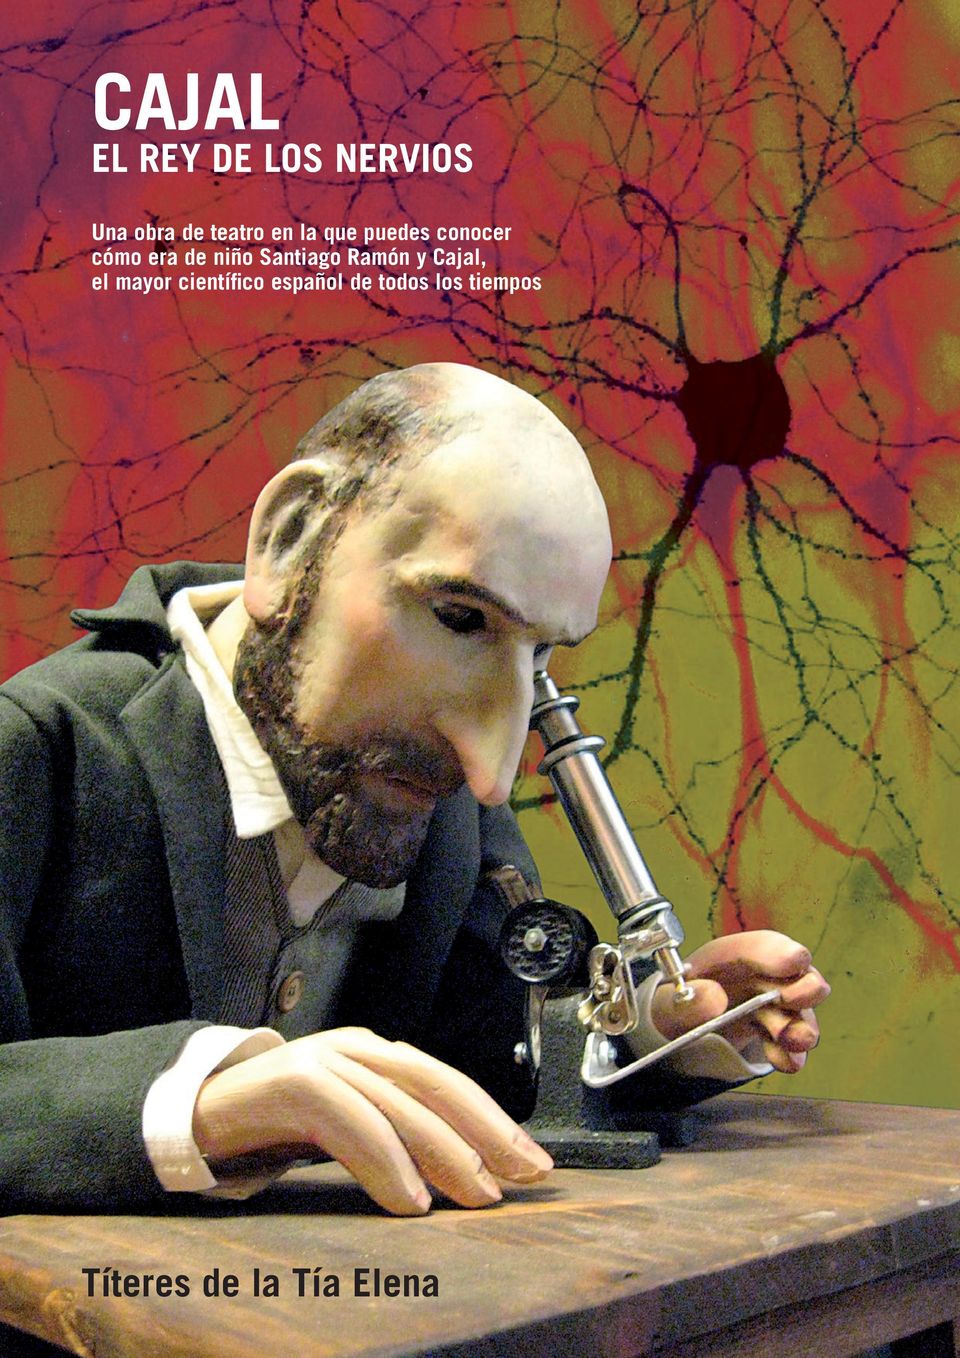 Santiago Ramón y Cajal, el mayor científico